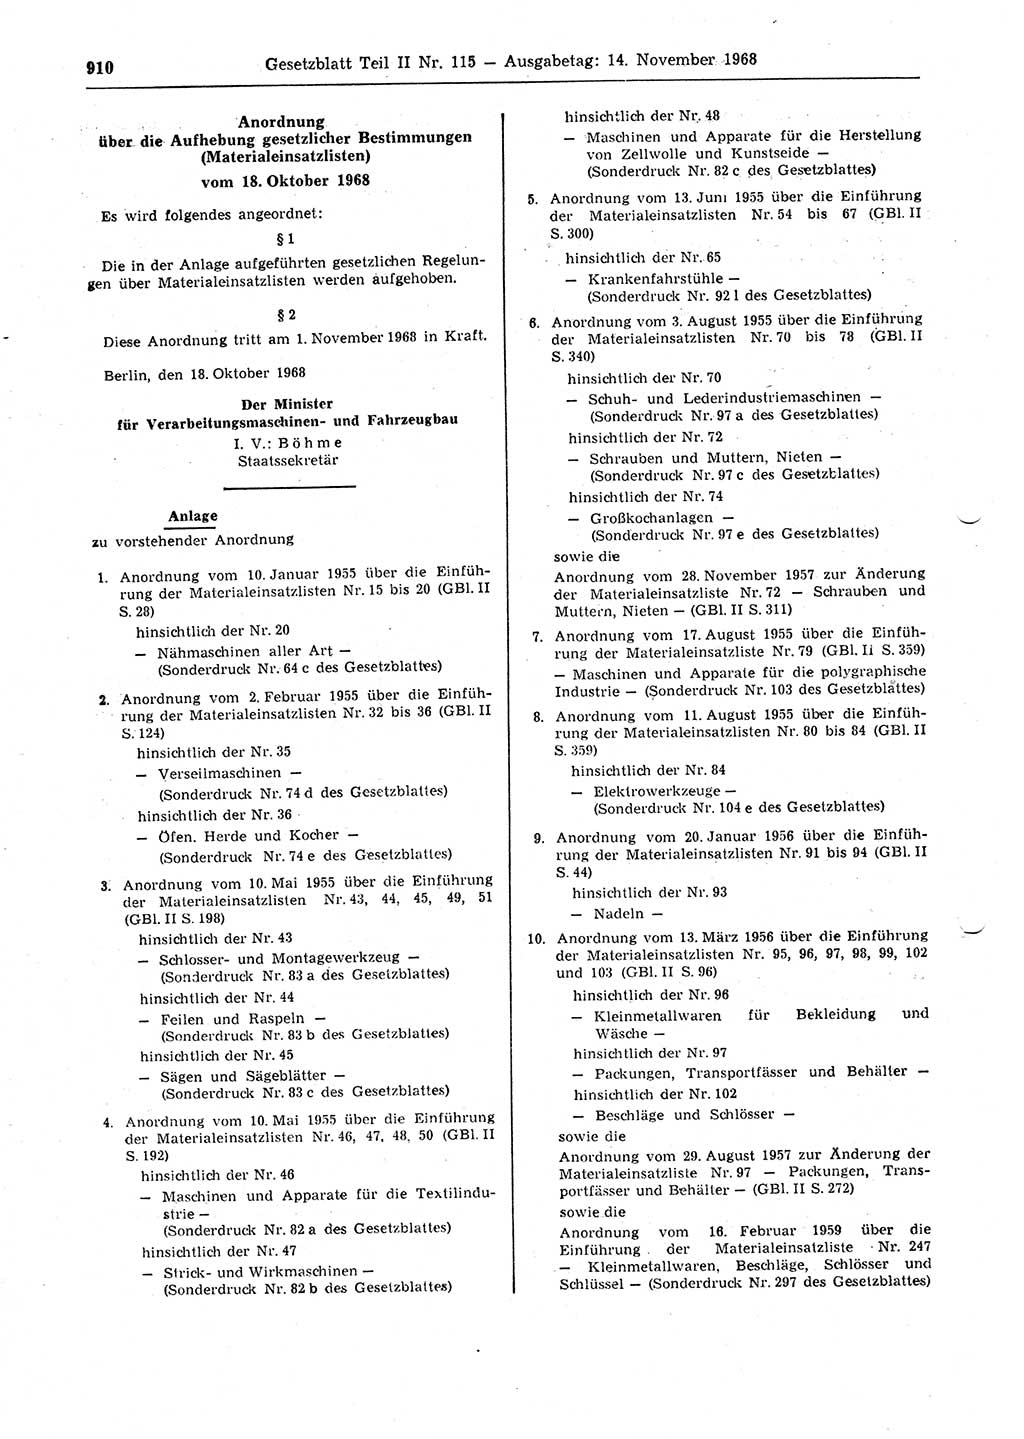 Gesetzblatt (GBl.) der Deutschen Demokratischen Republik (DDR) Teil ⅠⅠ 1968, Seite 910 (GBl. DDR ⅠⅠ 1968, S. 910)